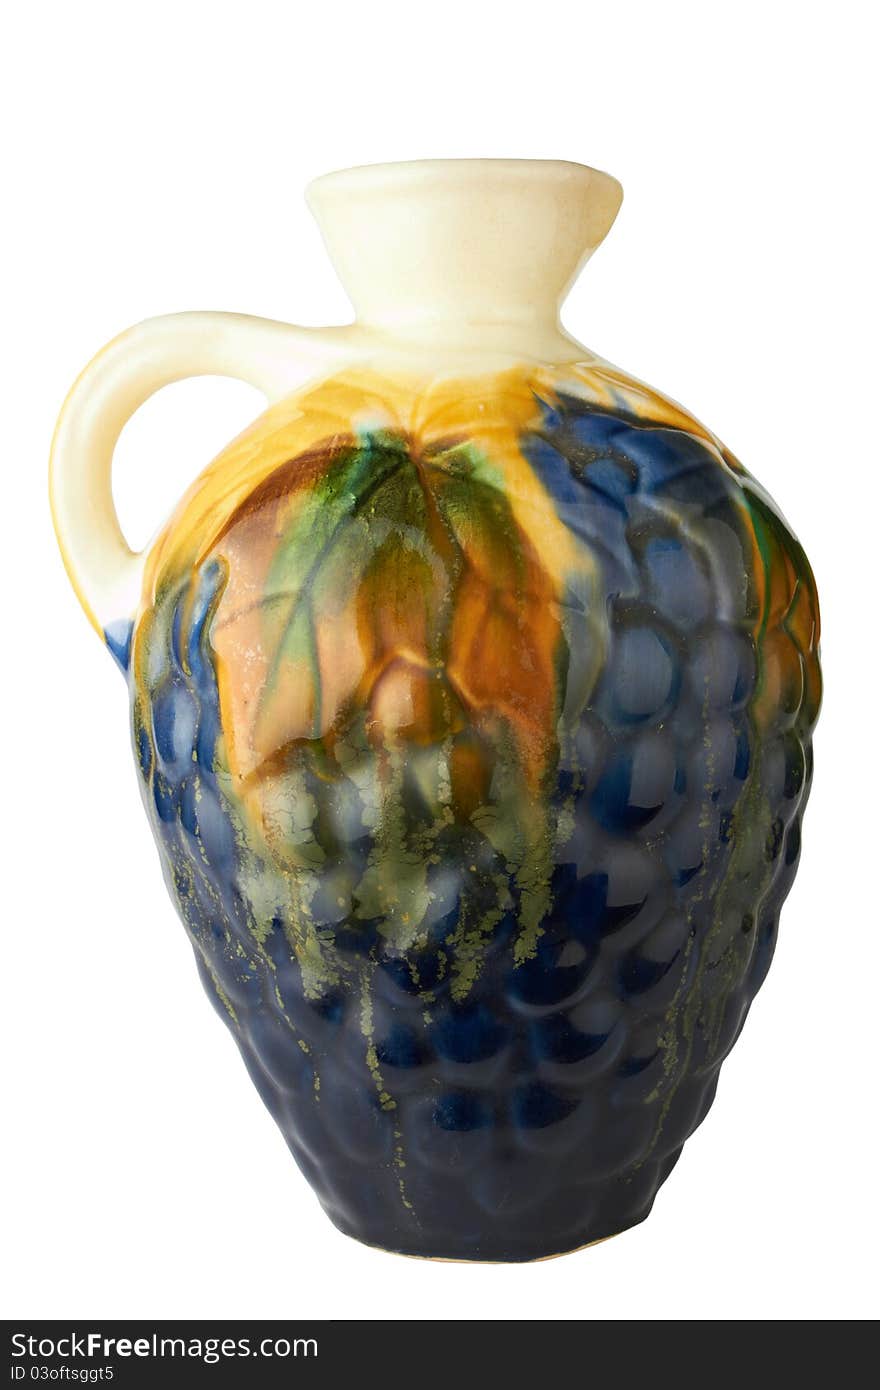 Porcelain vase isolated on white background